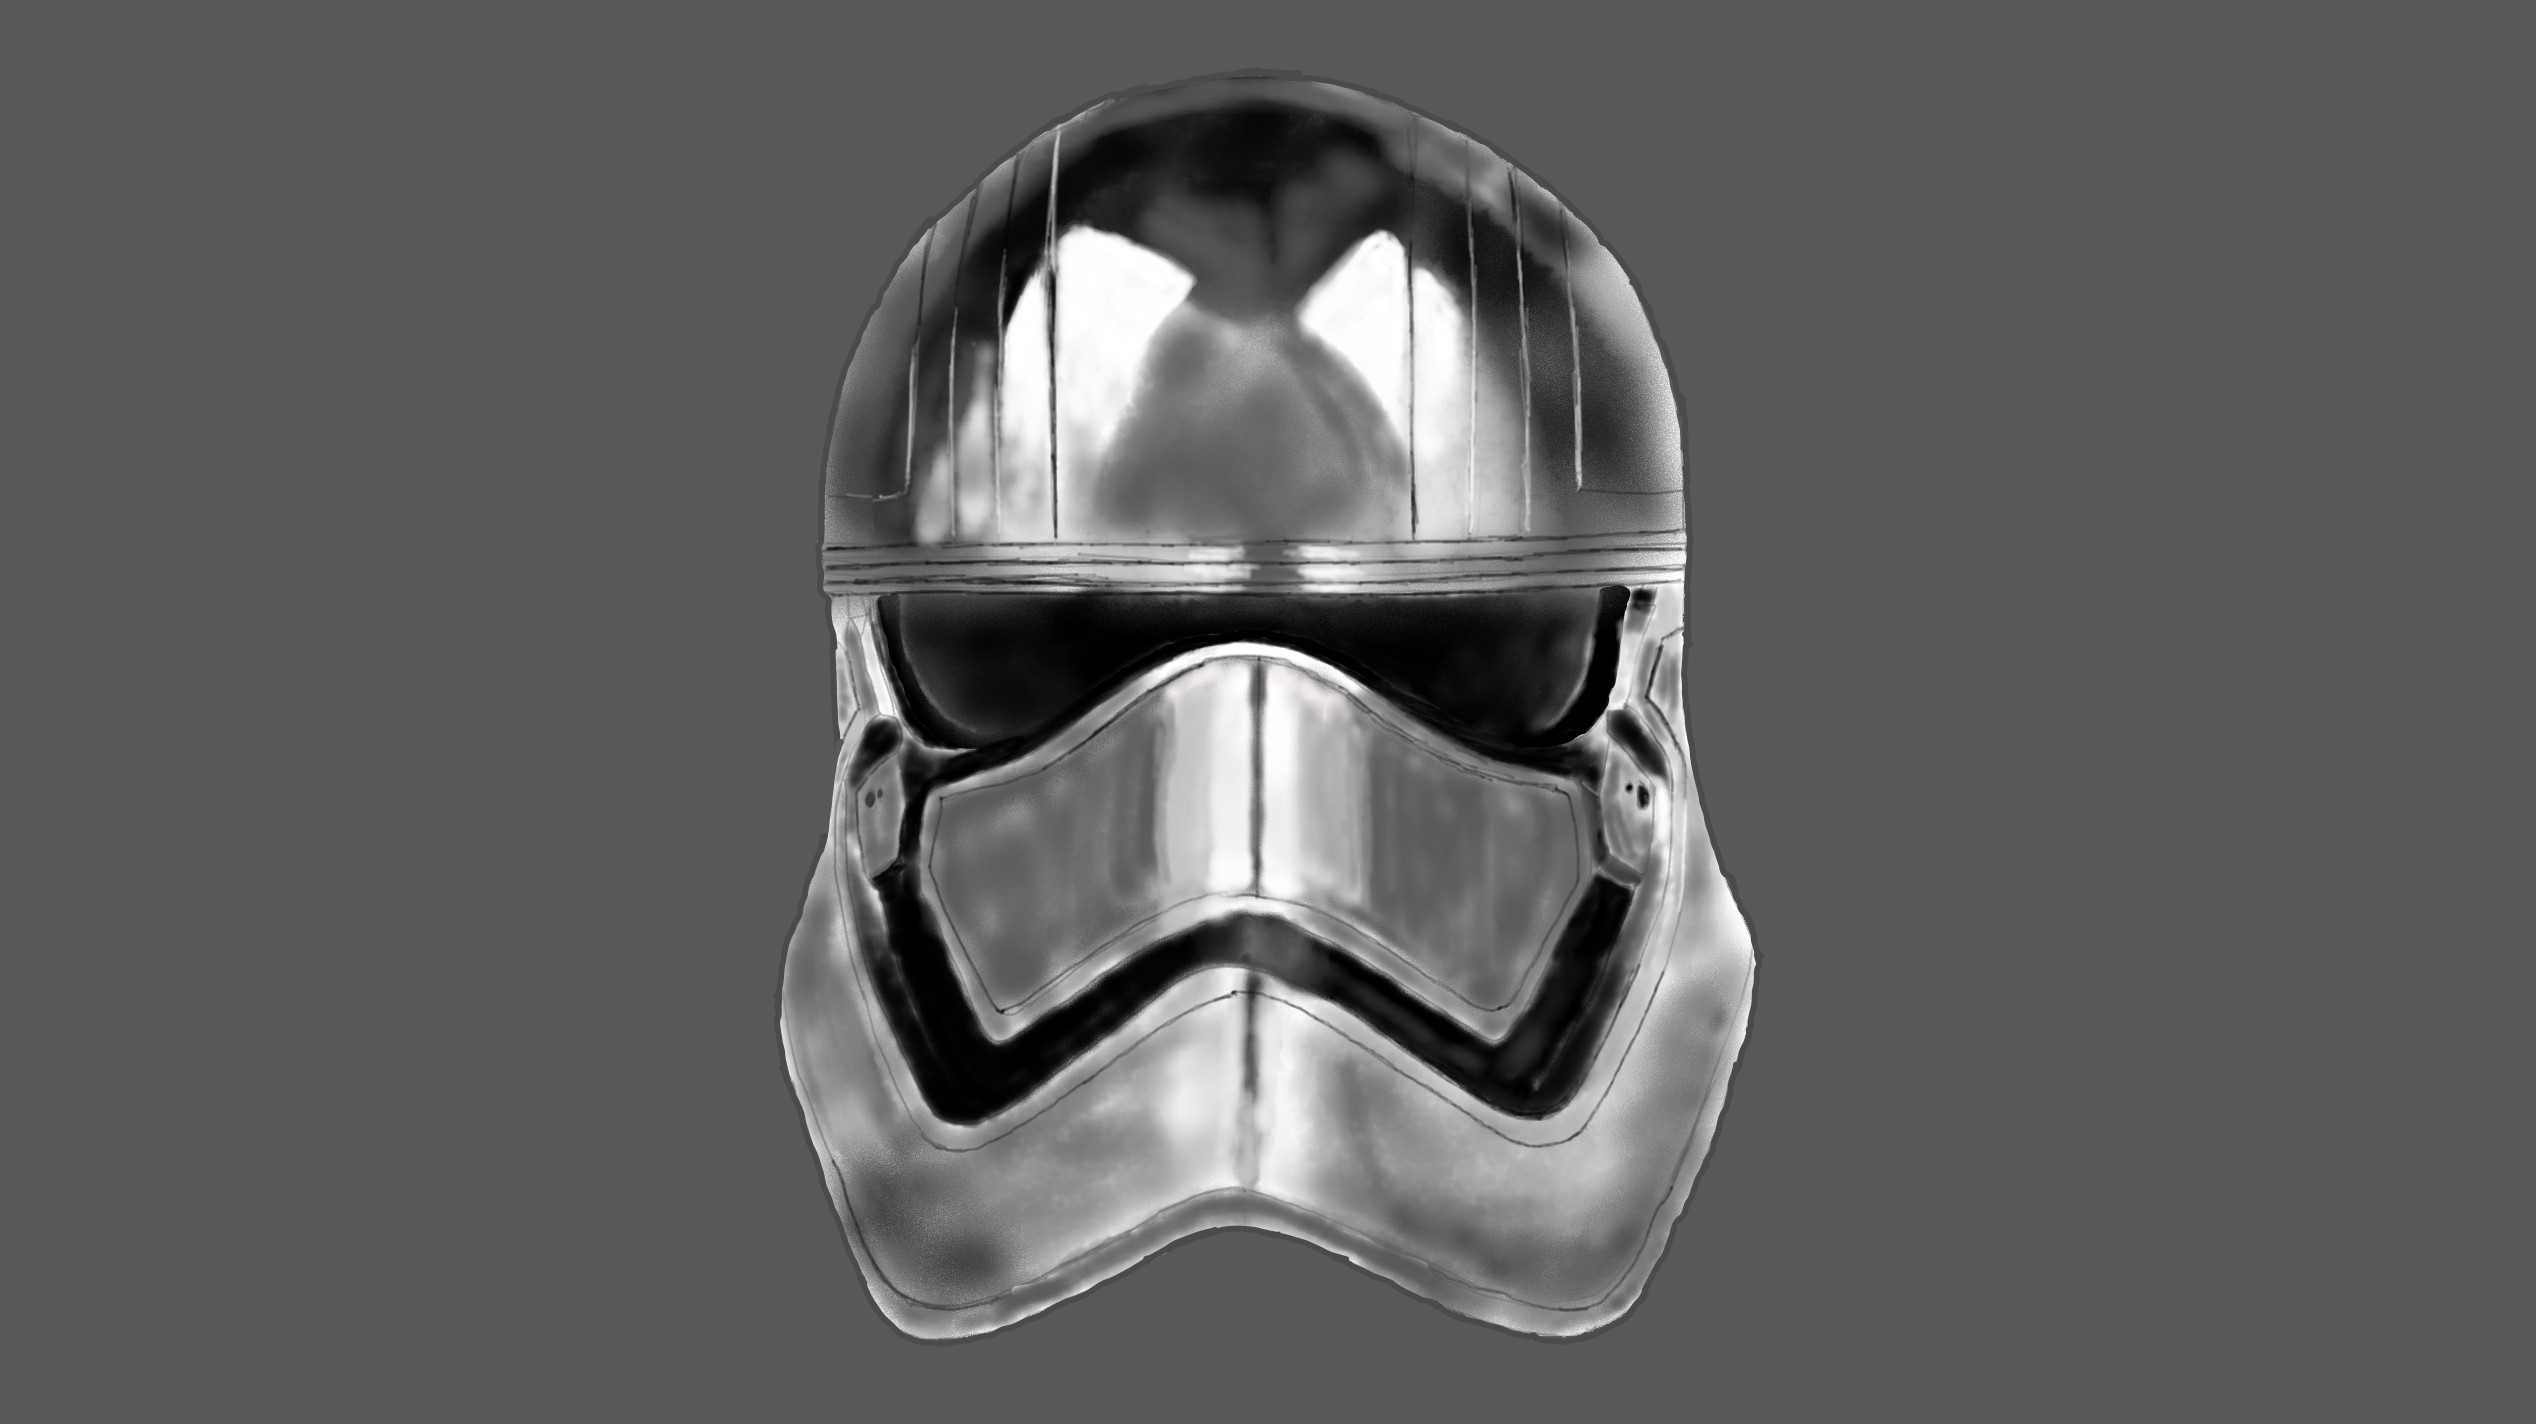 Star Wars Heroes Star Wars Captain Phasma Grey Helmet 2536x1424